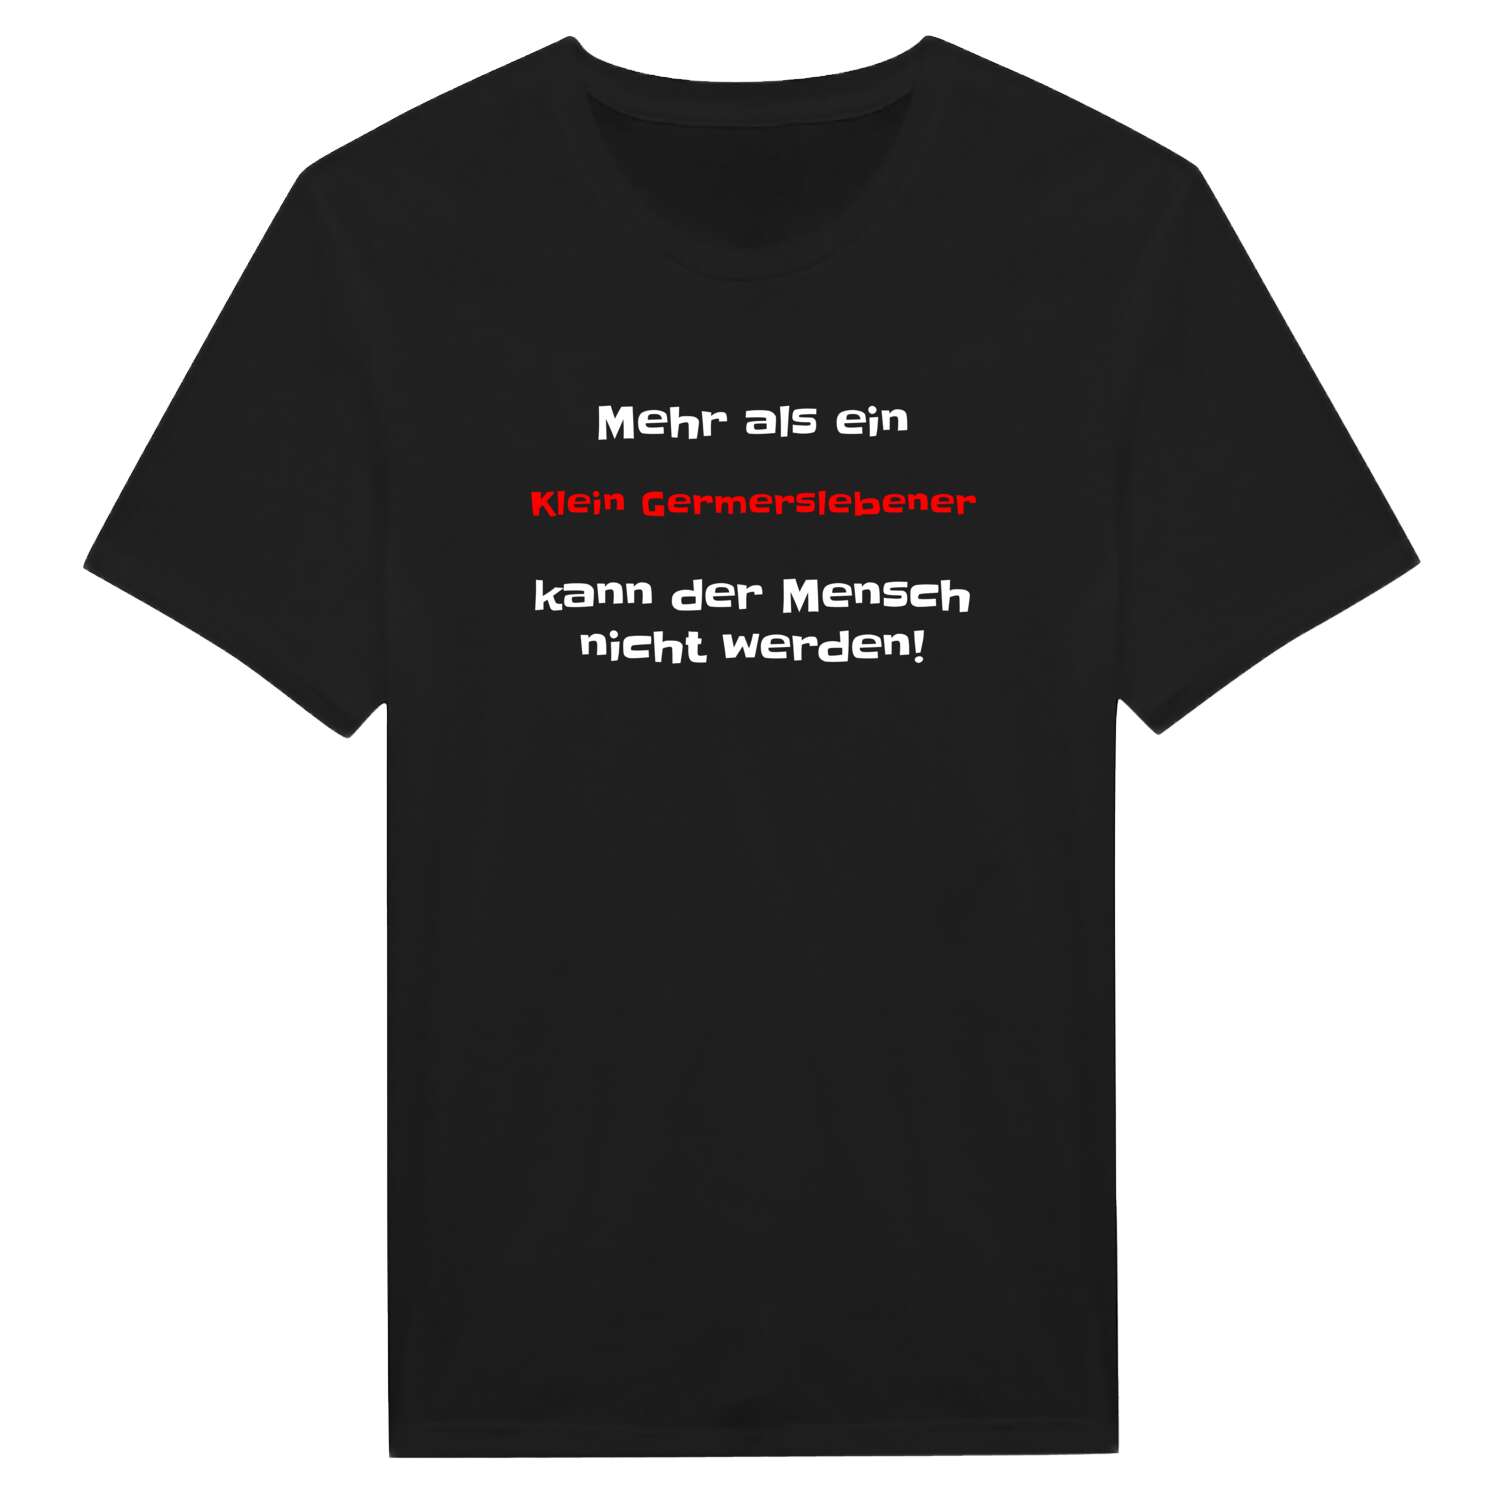 Klein Germersleben T-Shirt »Mehr als ein«